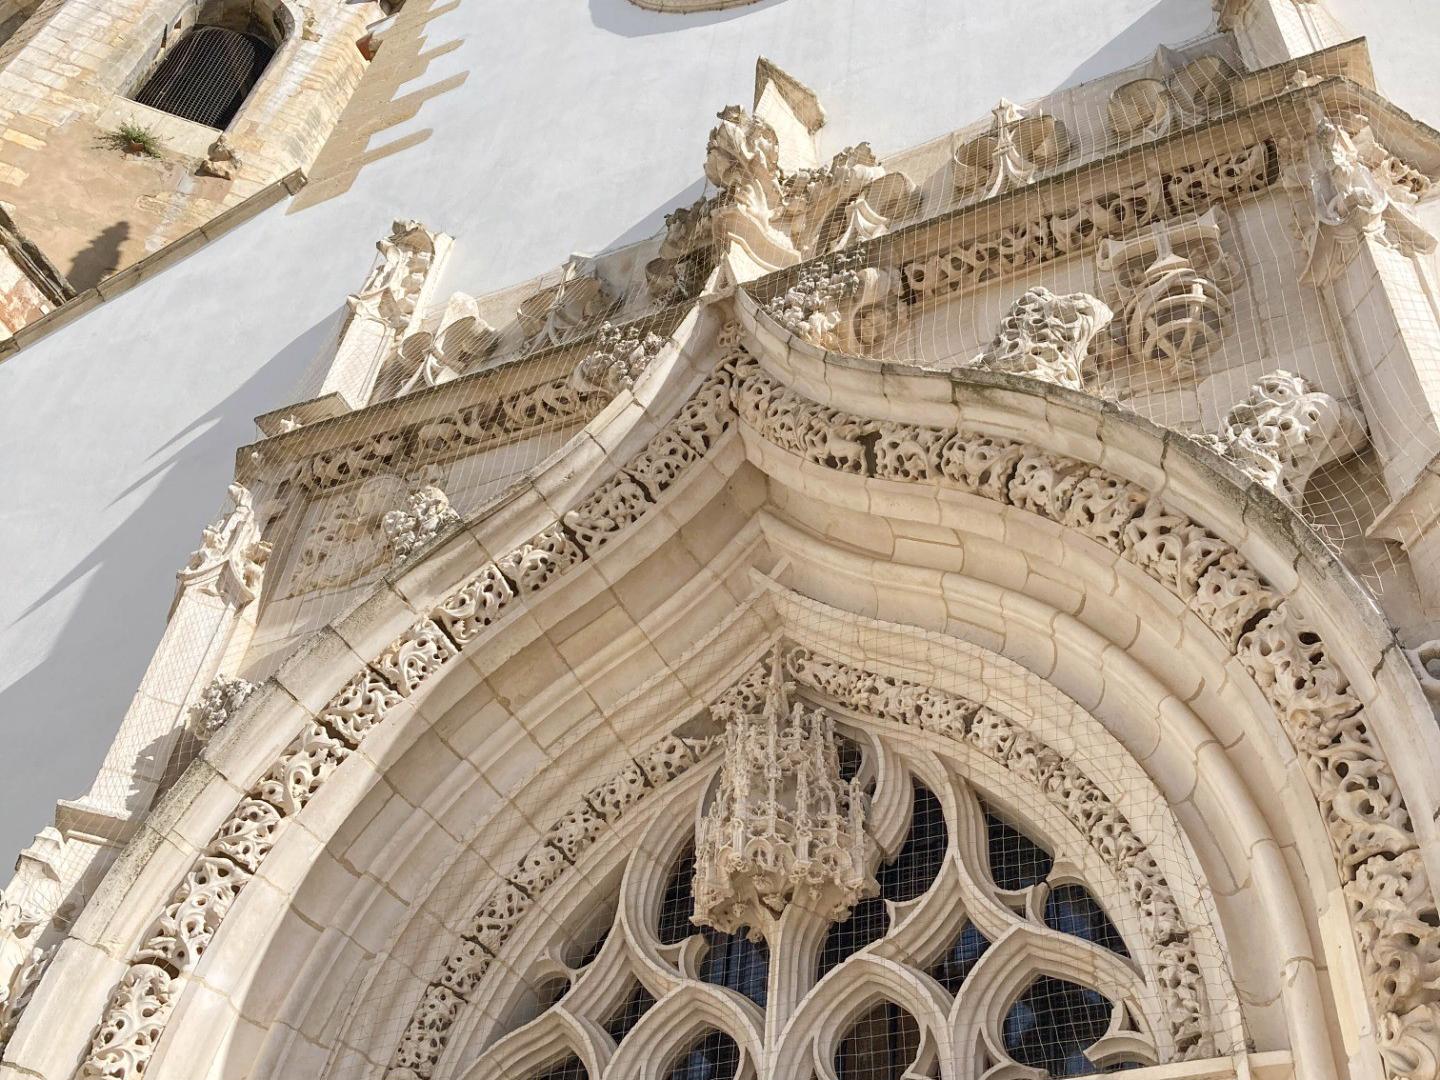 Fachada - A Igreja apresenta uma planta retangular, estruturada em três naves e com uma torre sineira com um relógio do século XVI. Os seus portais são luxuosamente decorados ao estilo manuelino.